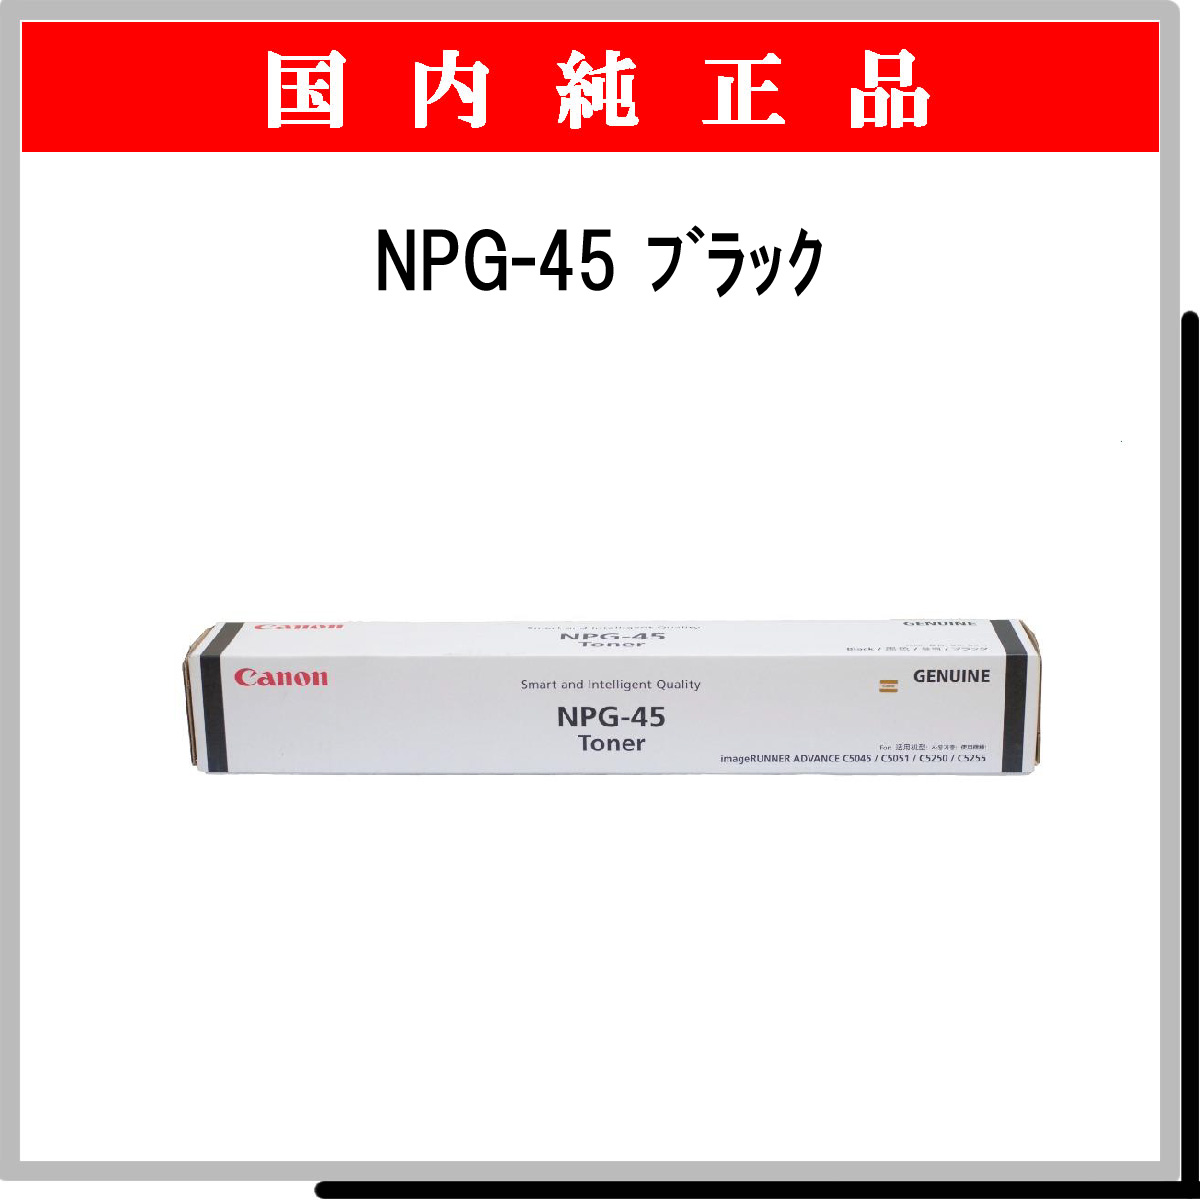 NPG-45 ﾌﾞﾗｯｸ 純正